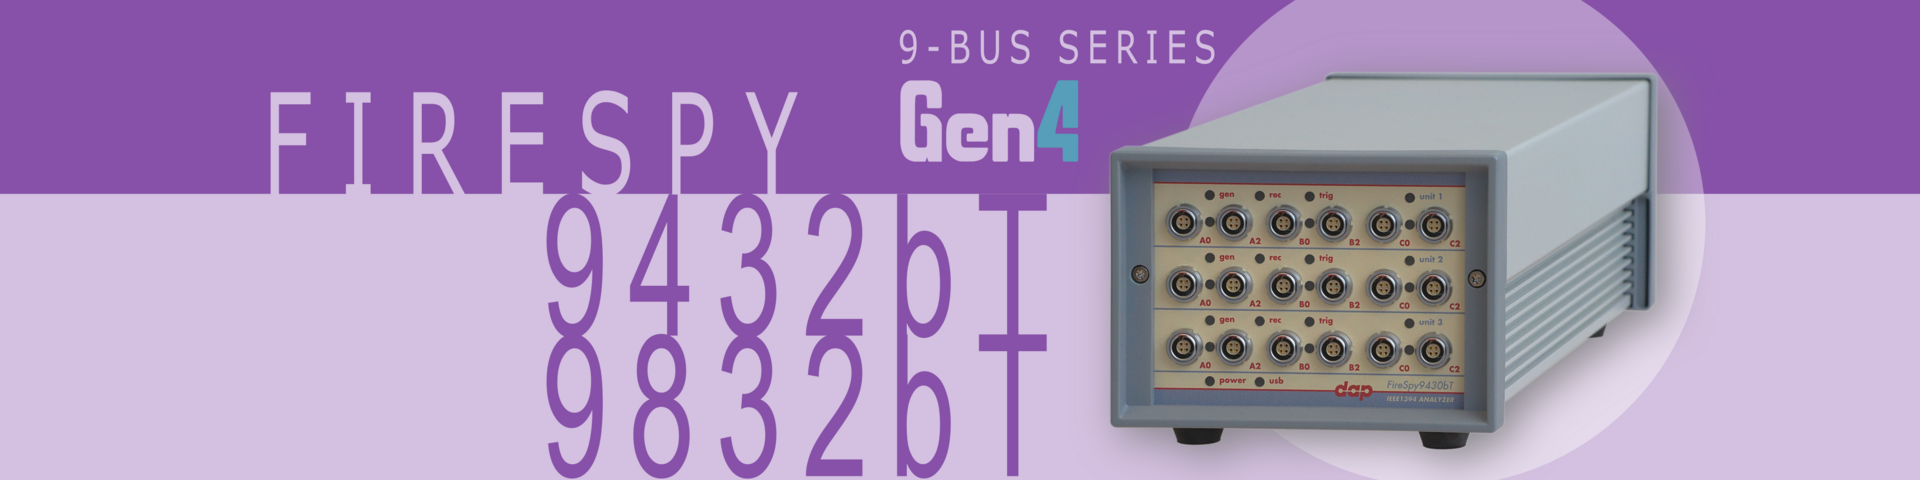 1394 and AS5643 Bus Analyzer - FireSpy9432b(T)/9832b(T)